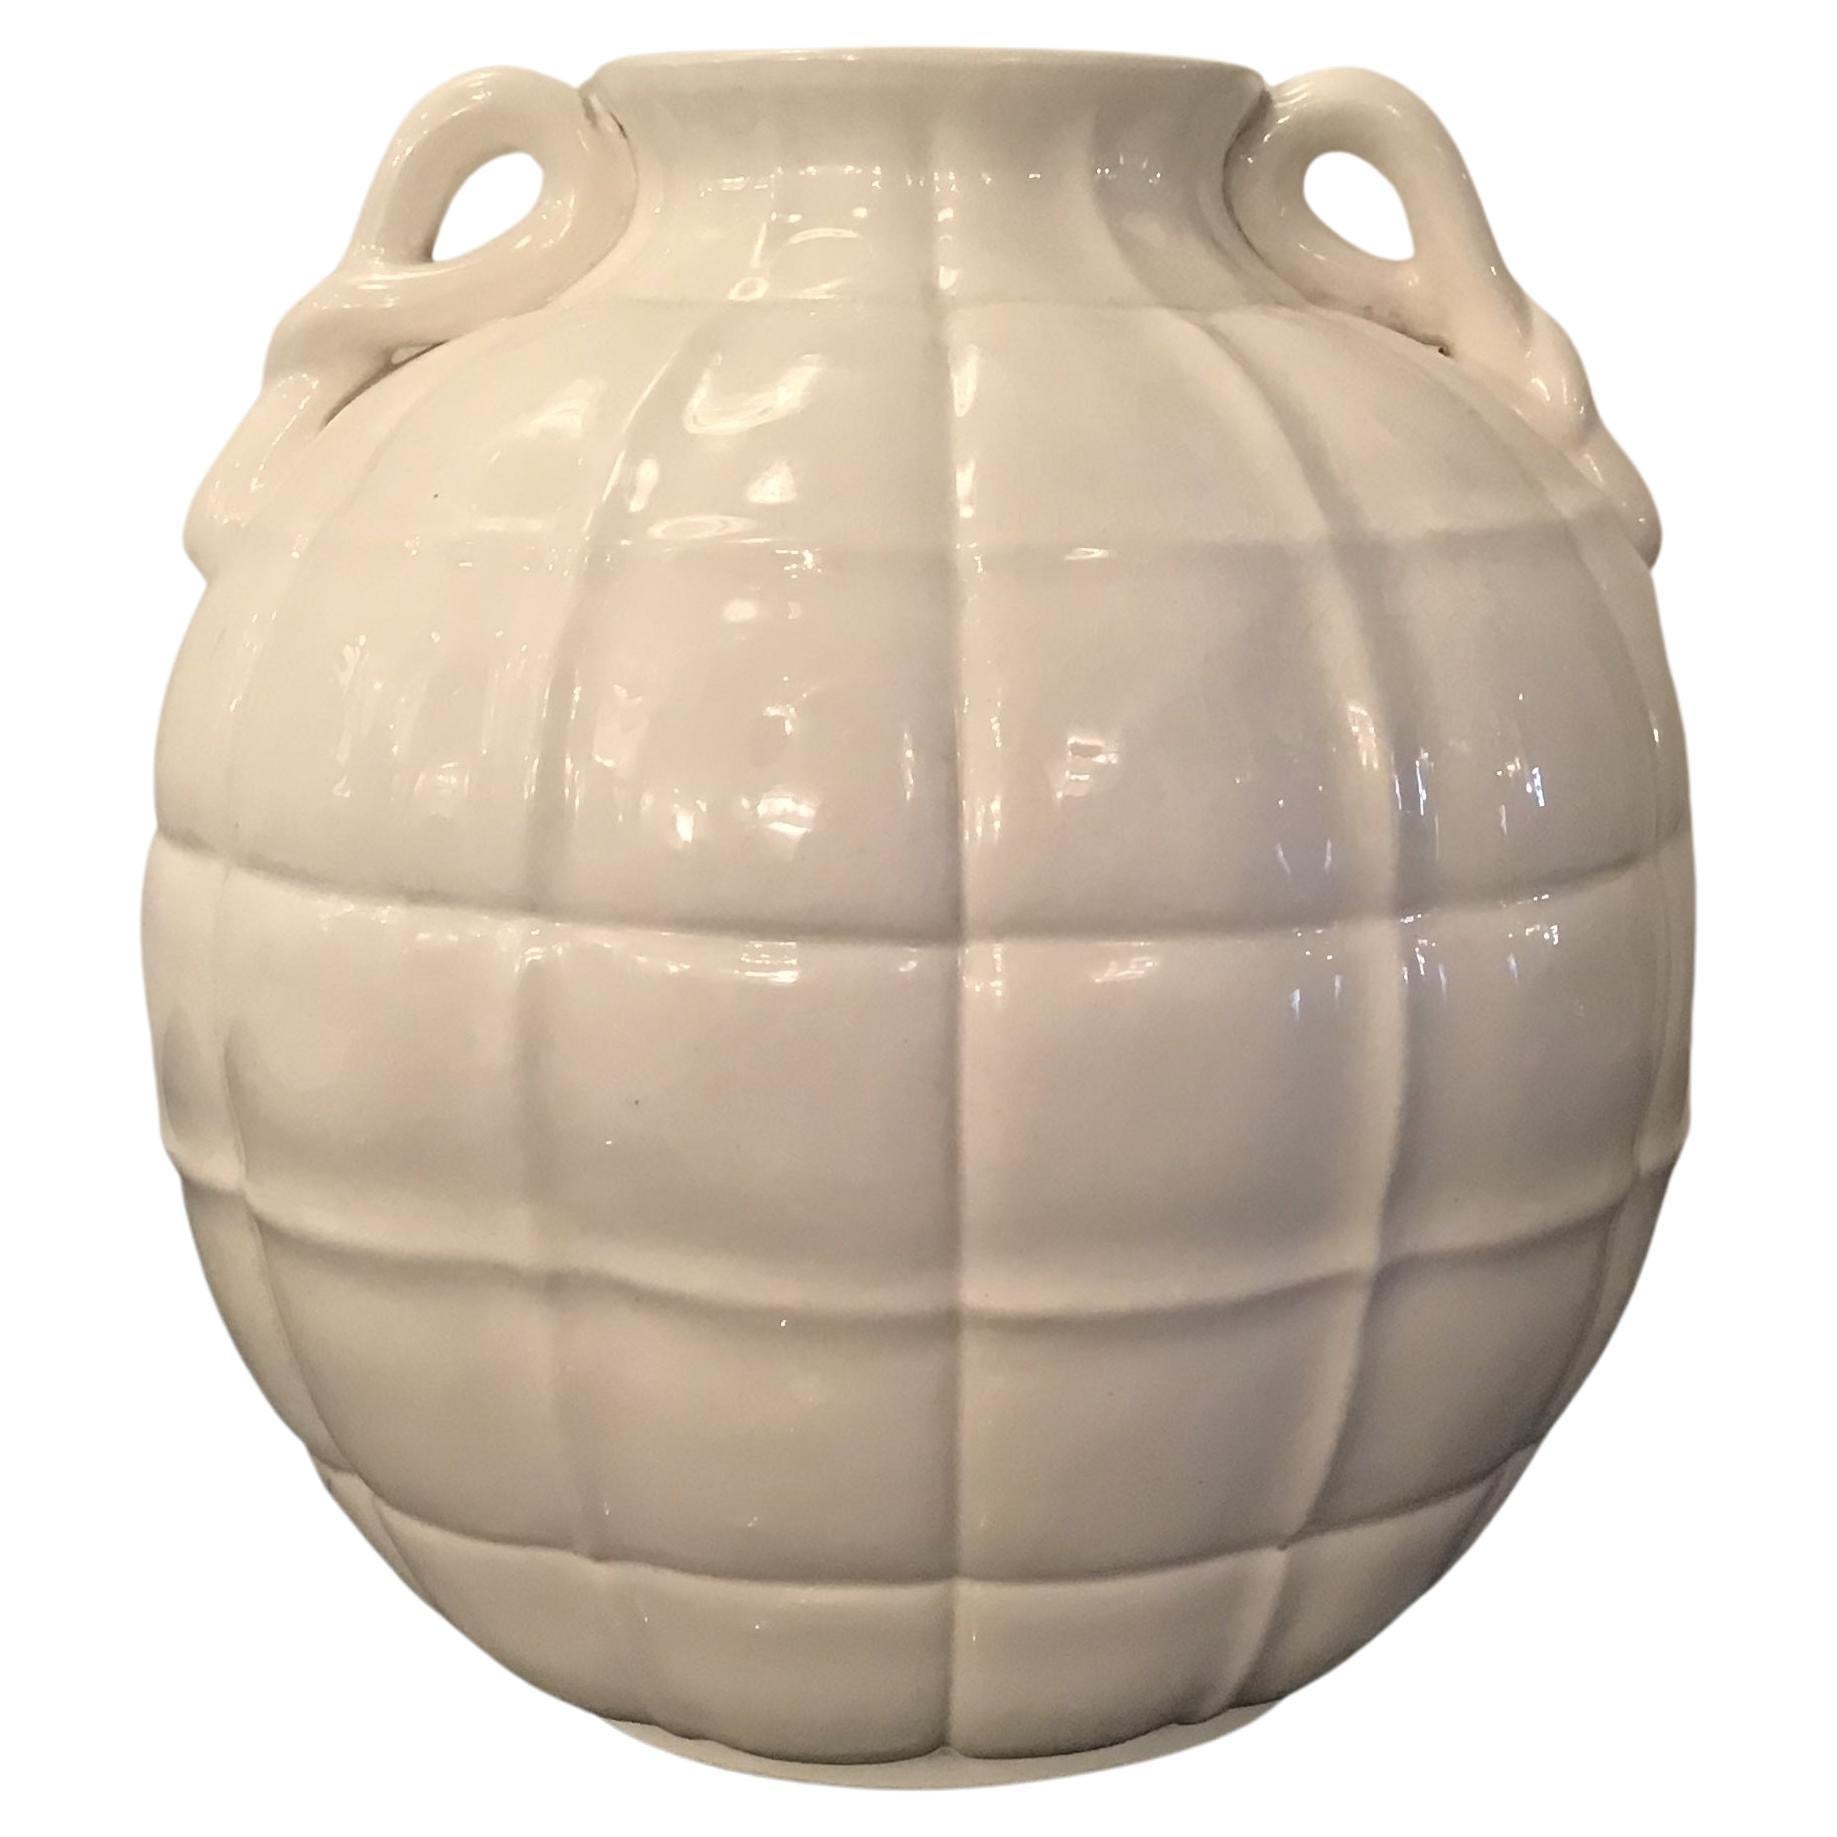 Gio’ Ponti  “ Richard Ginori” Vase Ceramic 1929 Italy 